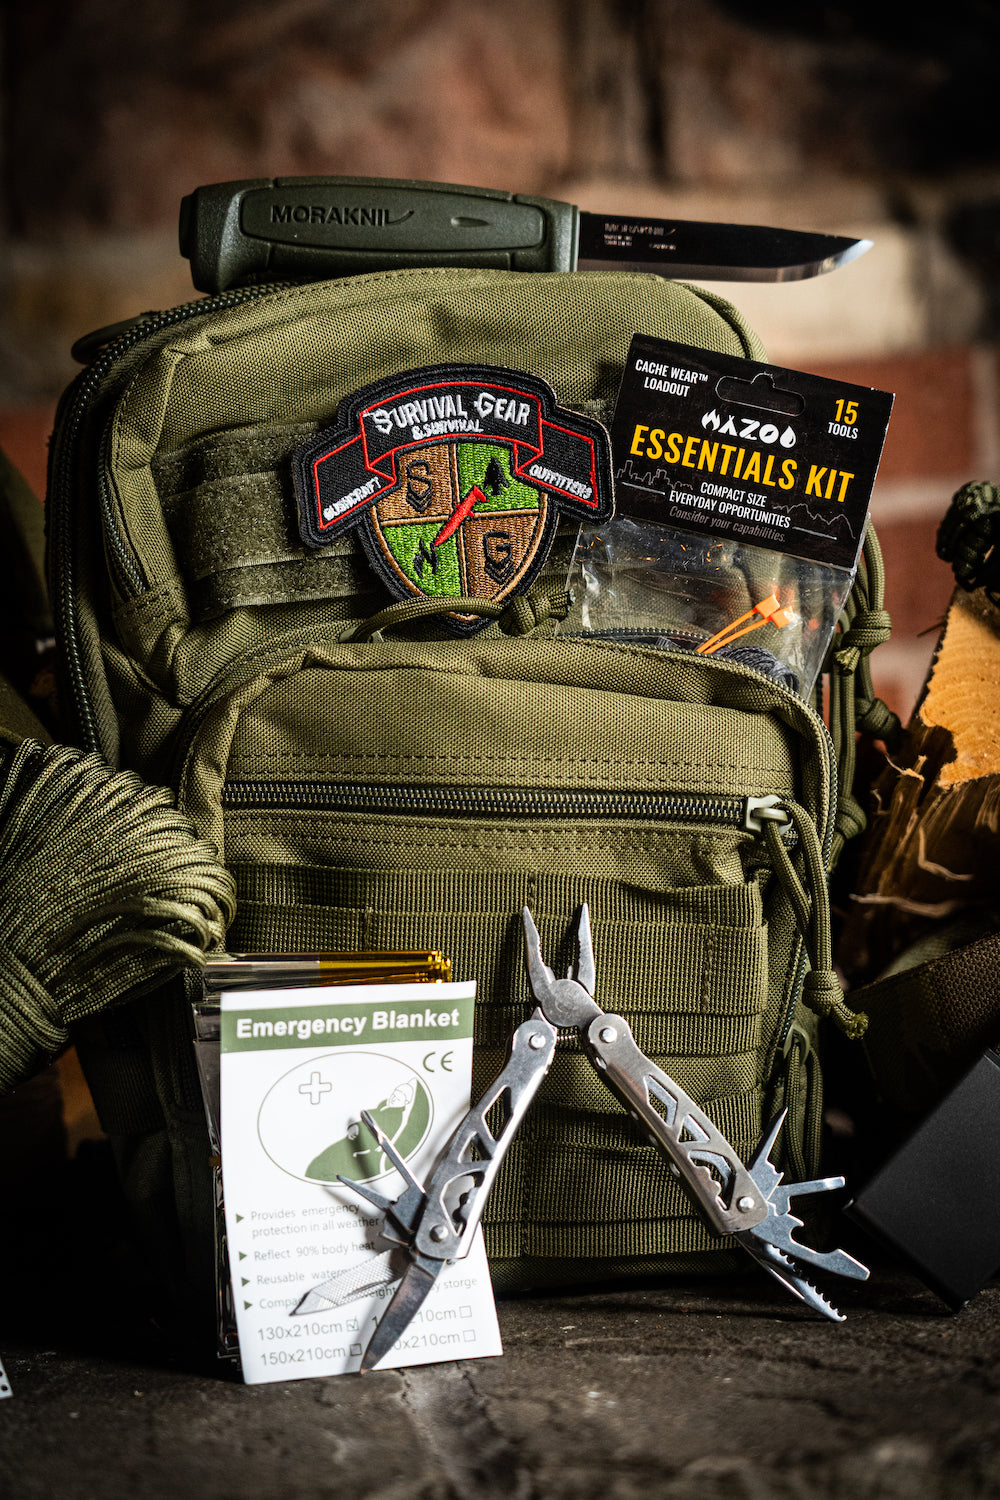 The Ranger Green Kit